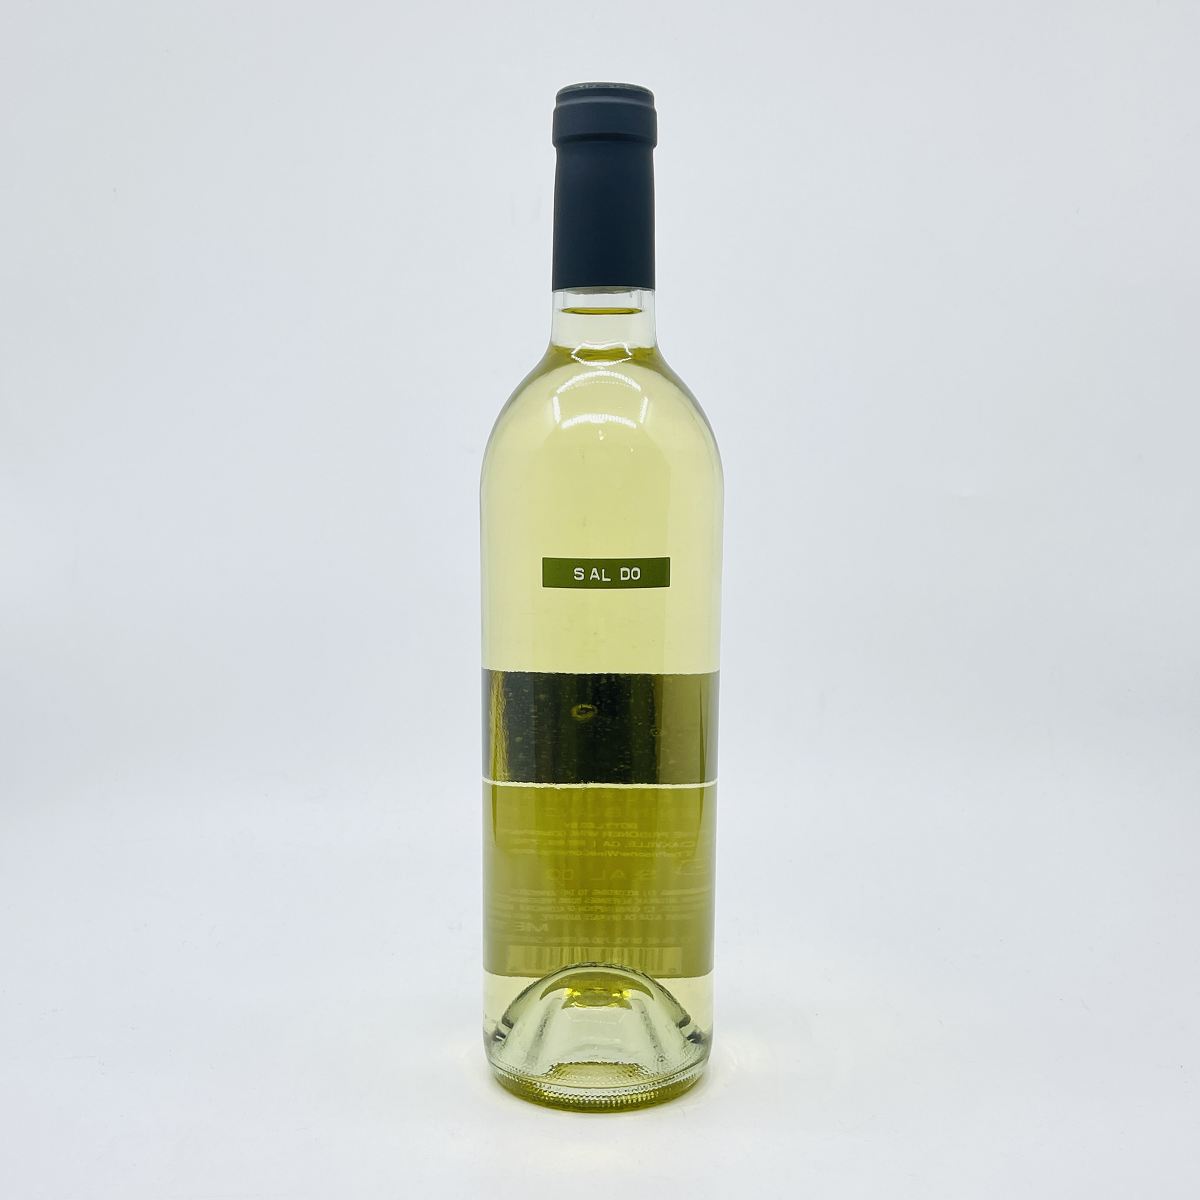 SALDO　サルード　シュナン・ブラン　2021　750ml　13.5%　プリズナー・ワインカンパニー　アメリカ　カリフォルニア ナパ・バレー　白ワイン　サルド　Saldo　CheninBlanc　The　Prisoner　Wine　Company